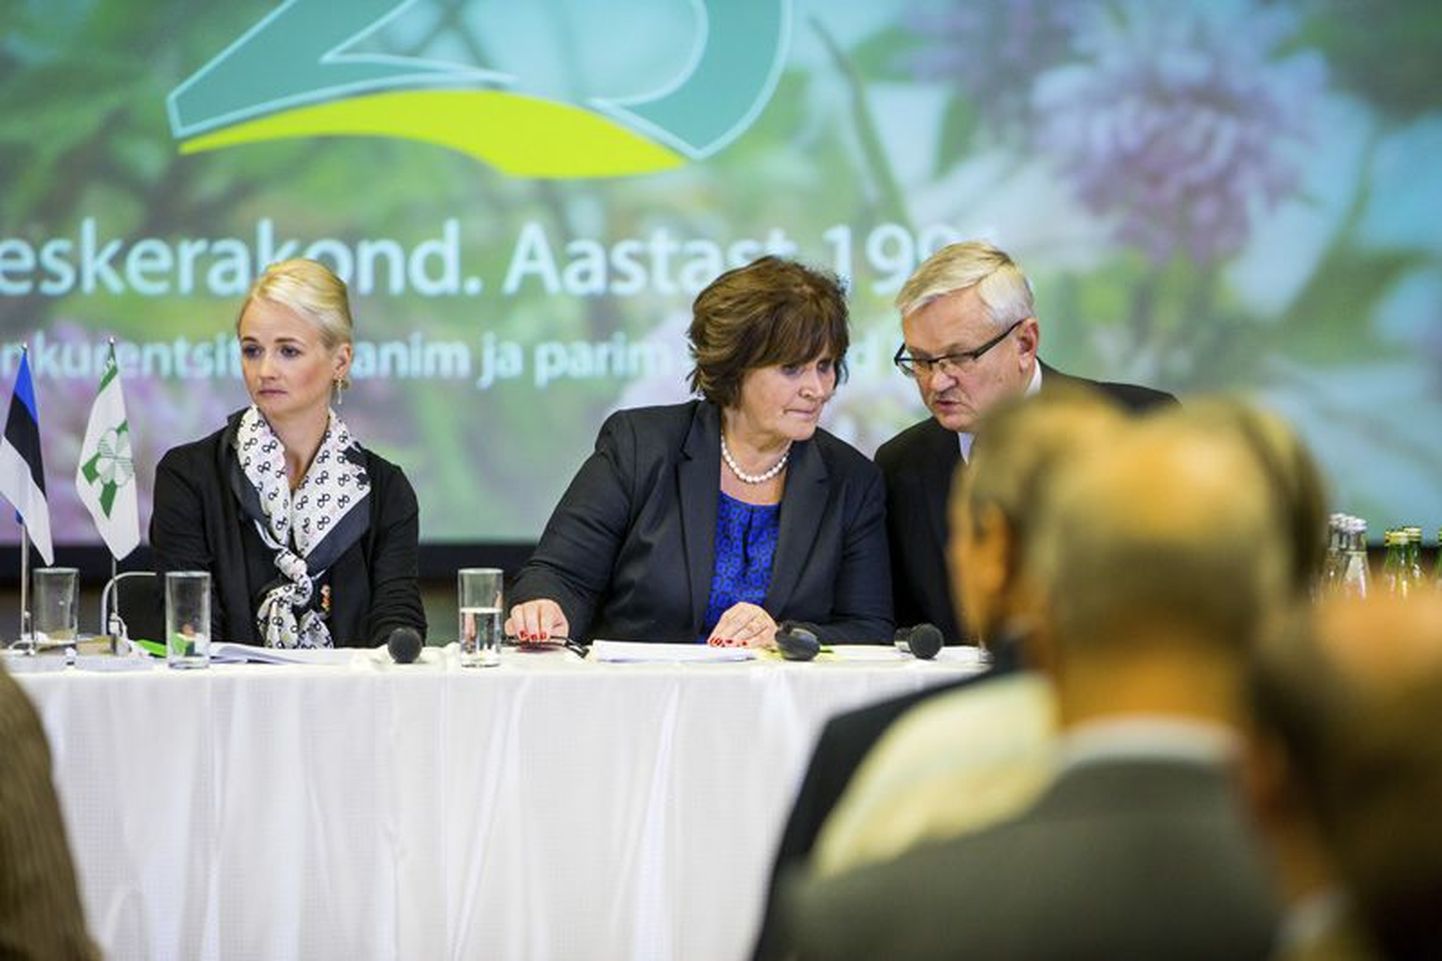 Siret Kotka (vasakul) on tõsine. Kersti Sarapuu on juba keskerakonna volikogu esimeheks valitud ja Kotka teab, et temal ja Tarmo Tammel tuleb volikogu aseesimehe positsioonist loobuda.